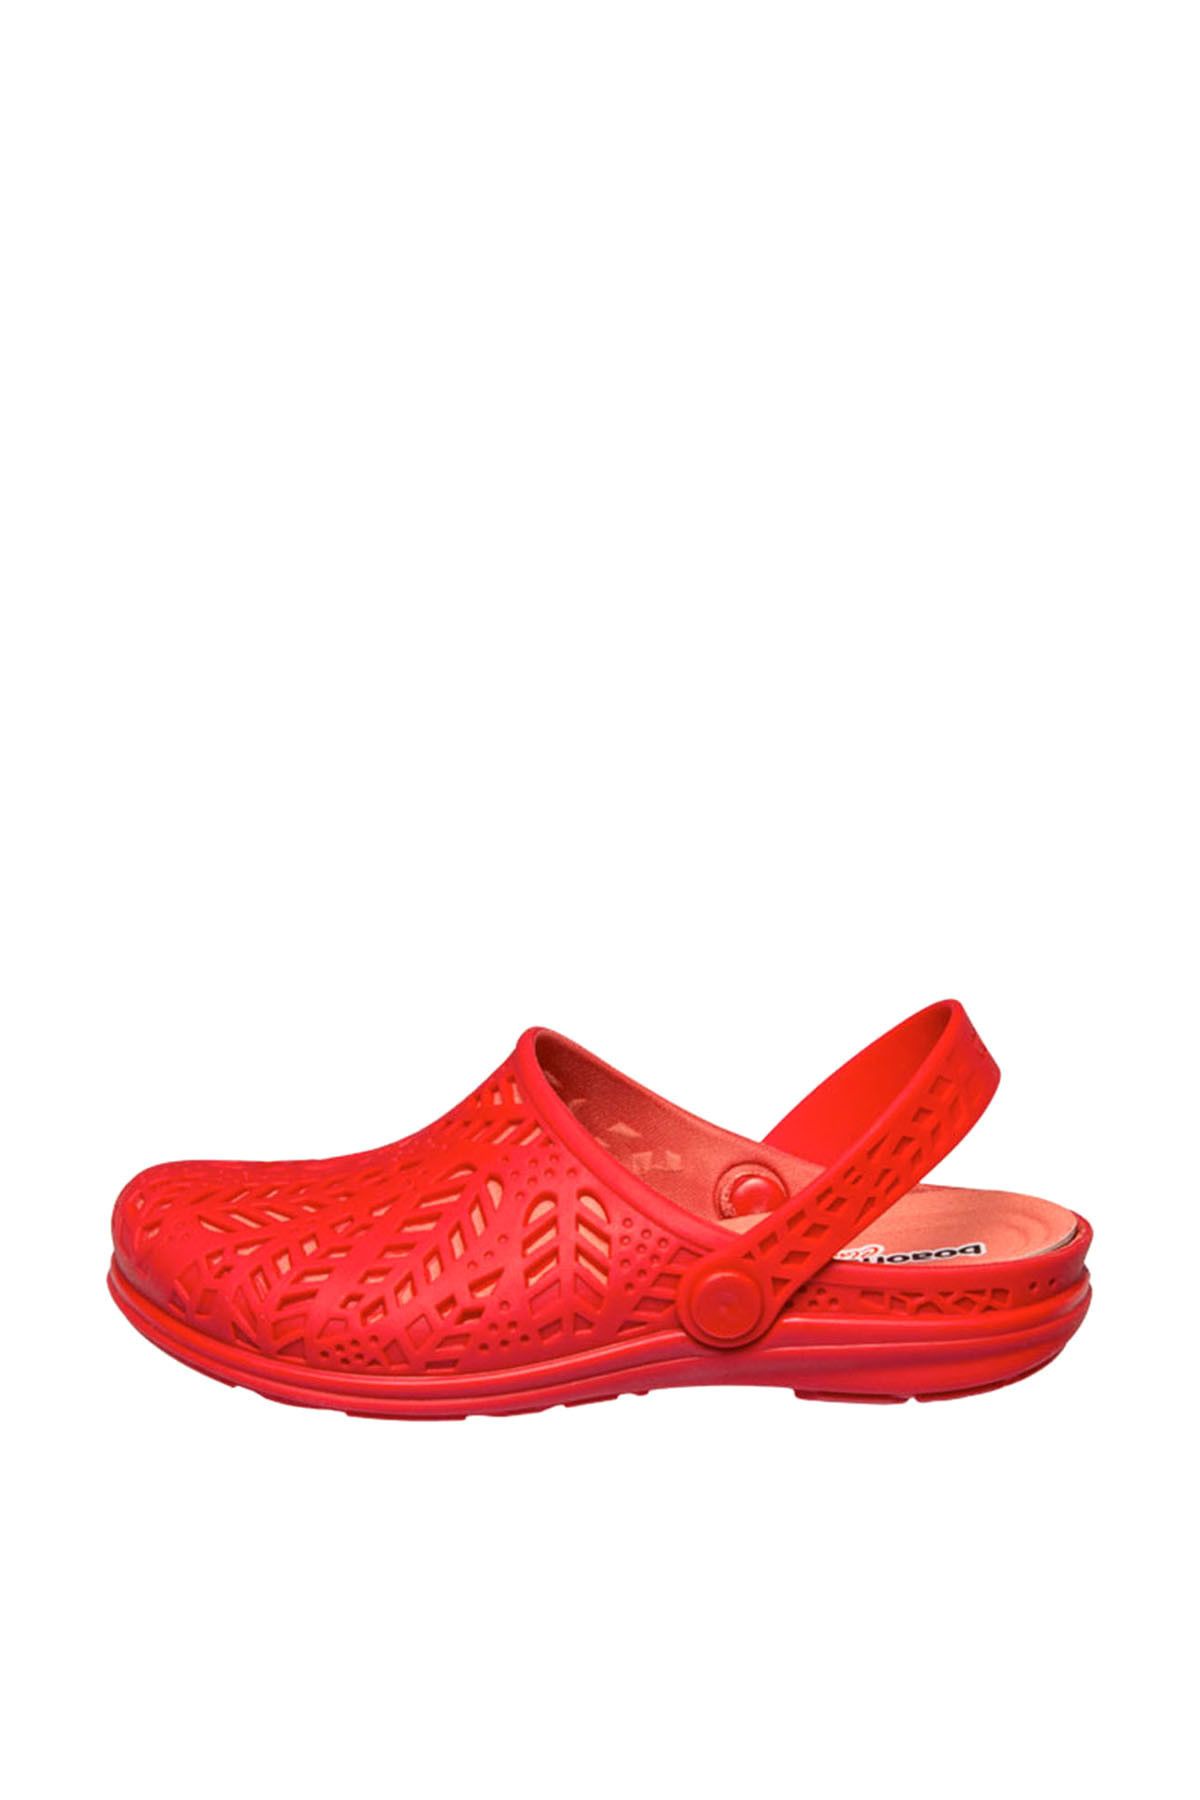 BOAONDA Kırmızı Kadın Sandalet 1635